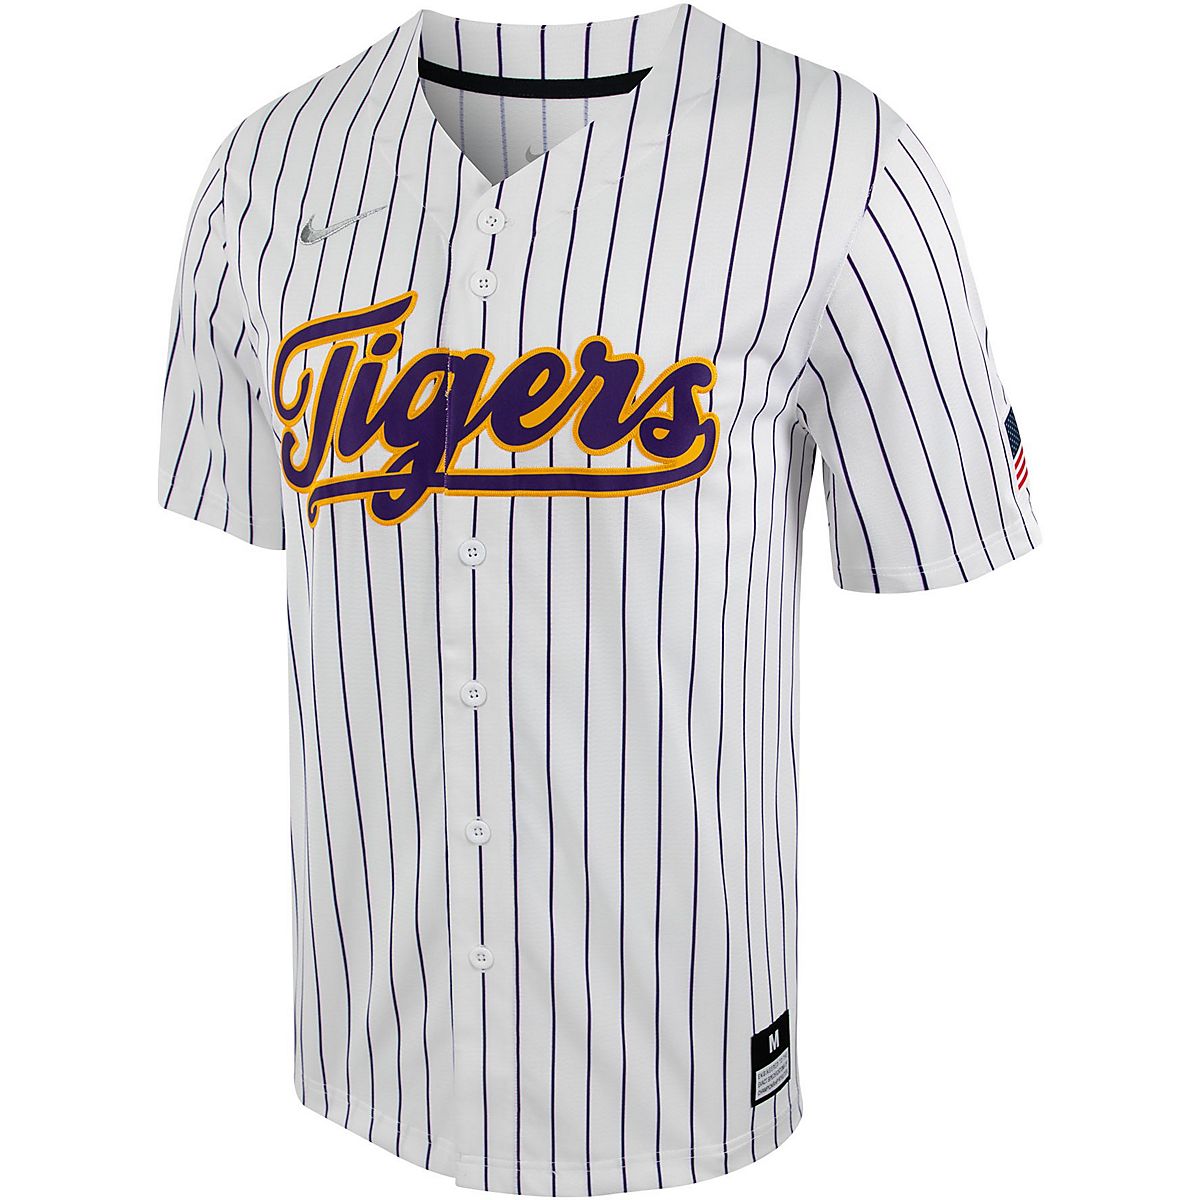 LSU Tigers baseball jersey